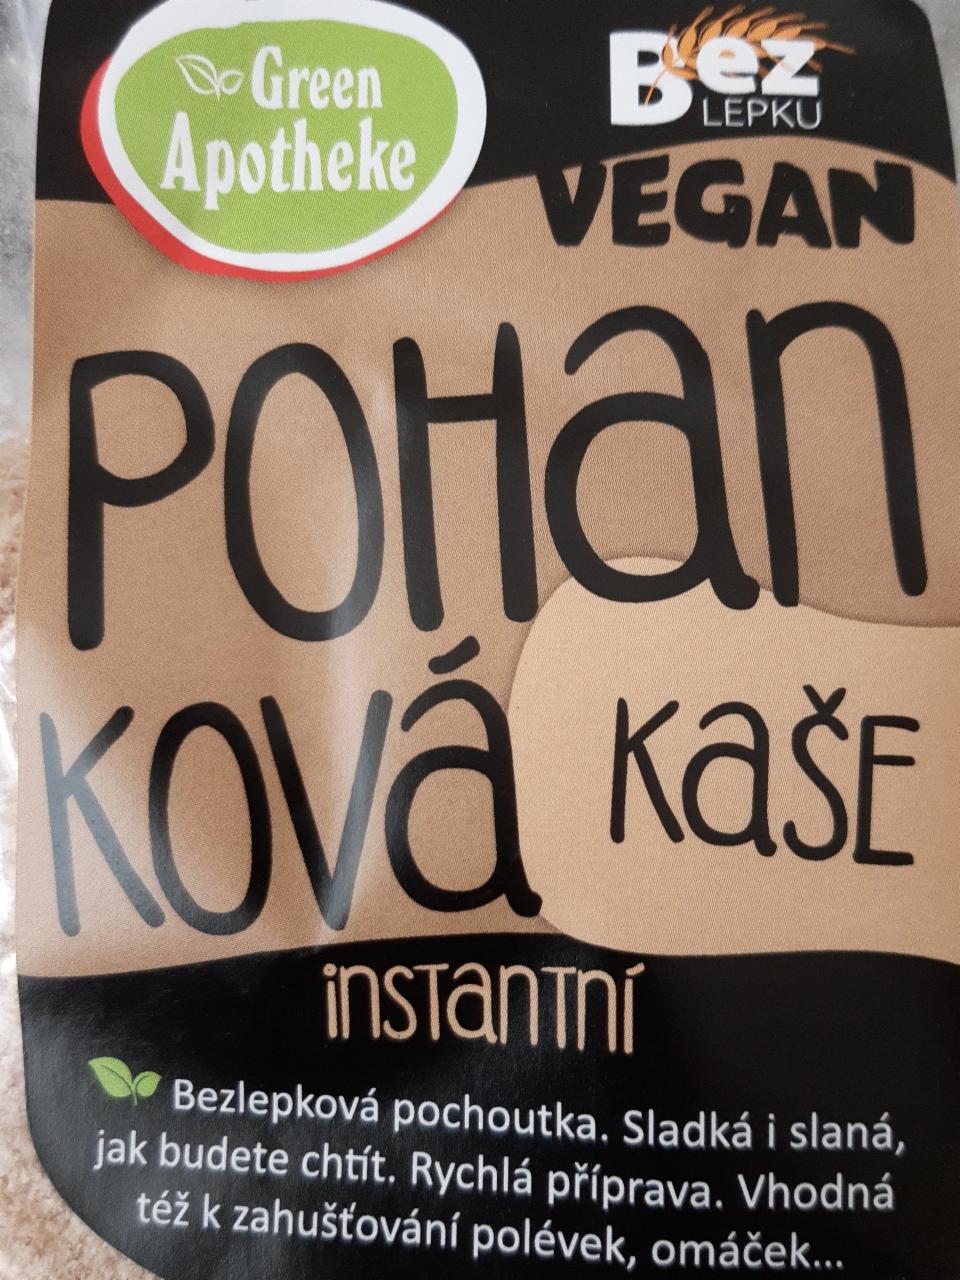 Fotografie - Pohanková instantní kaše vegan Green Apotheke